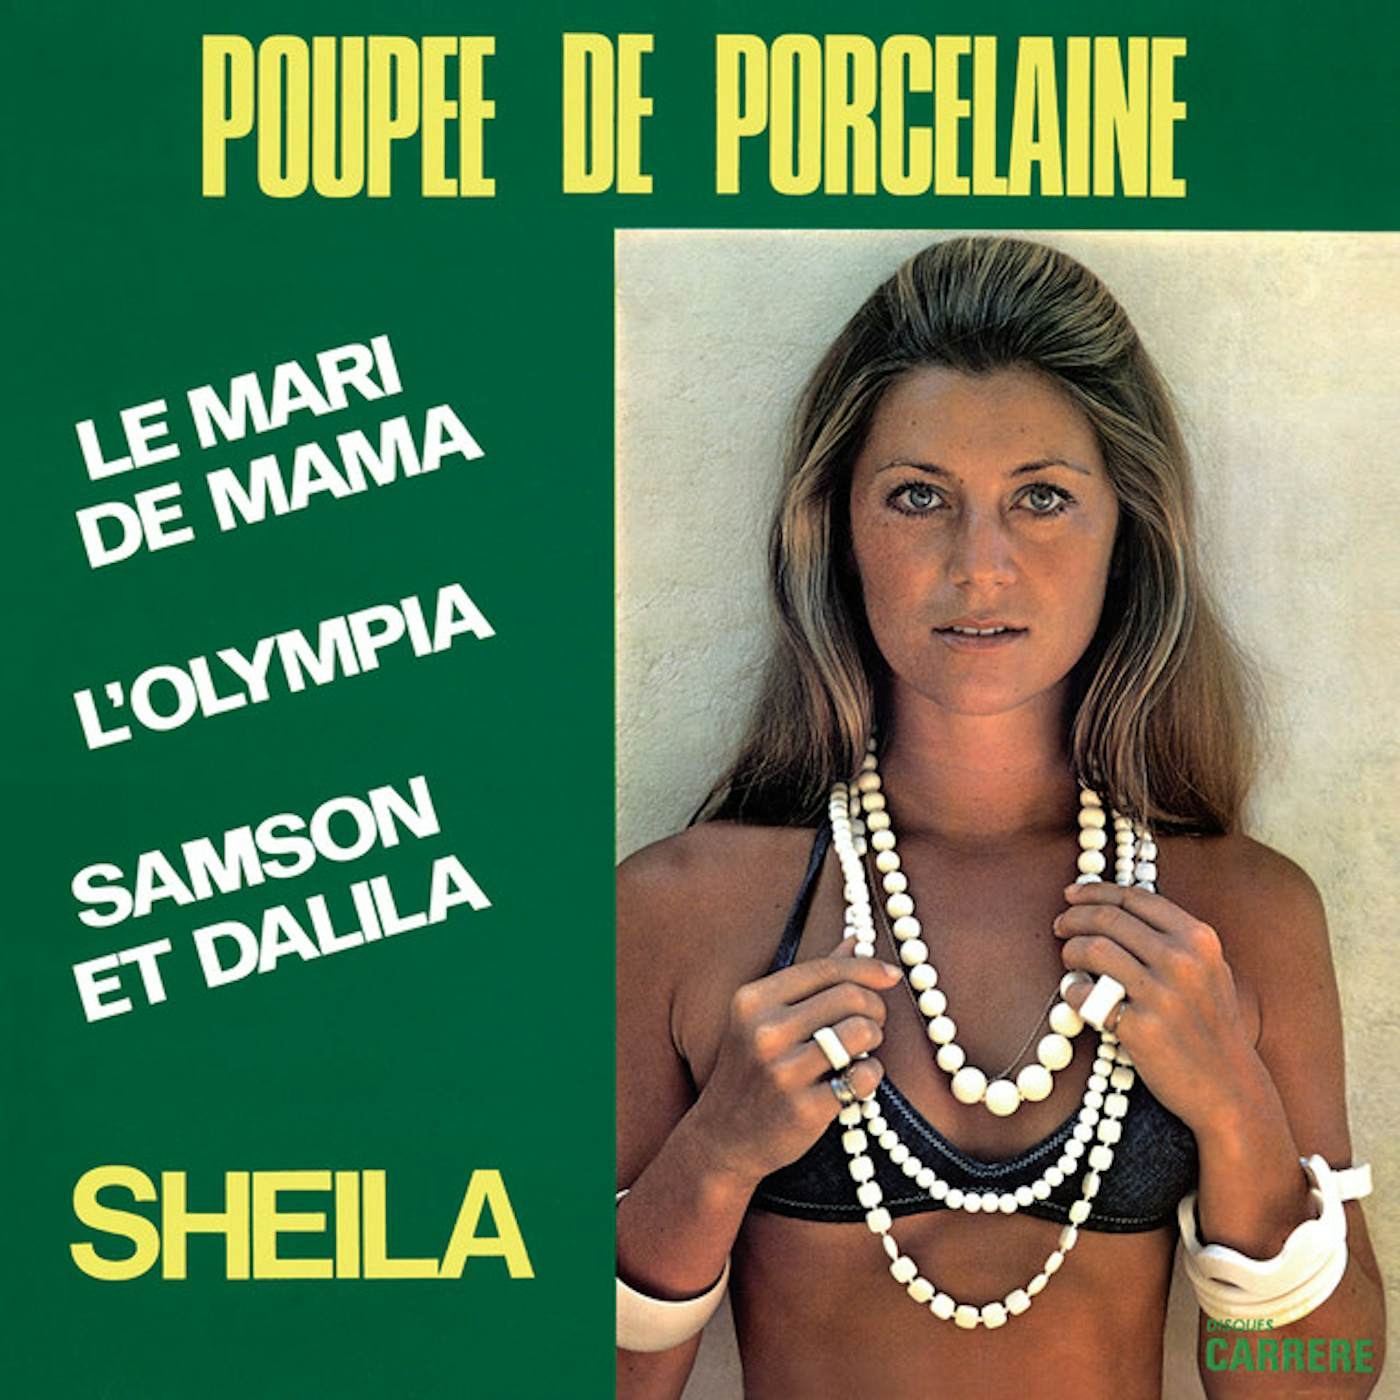 Sheila POUPEE DE PORCELAINE Vinyl Record